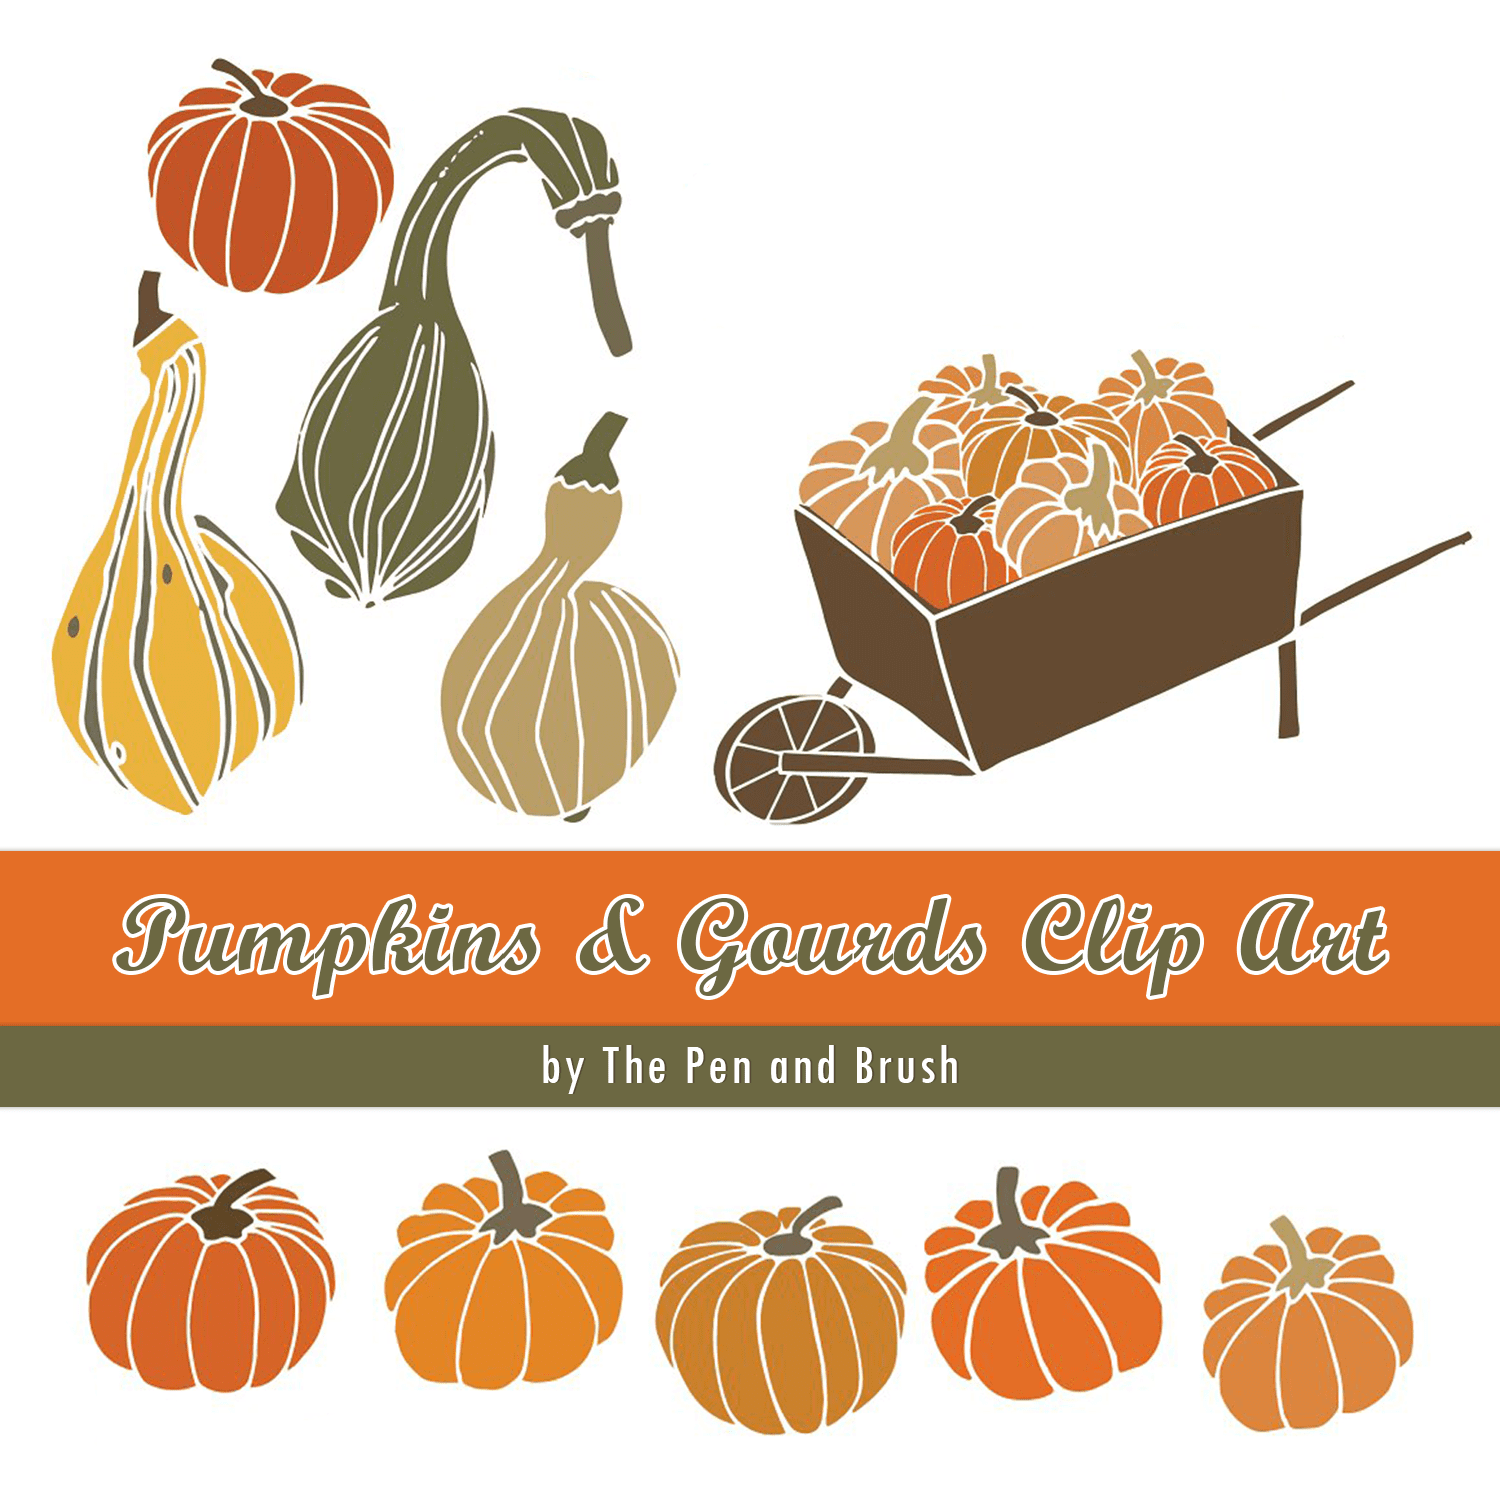 Pumpkins & Gourds Clip Art cover.